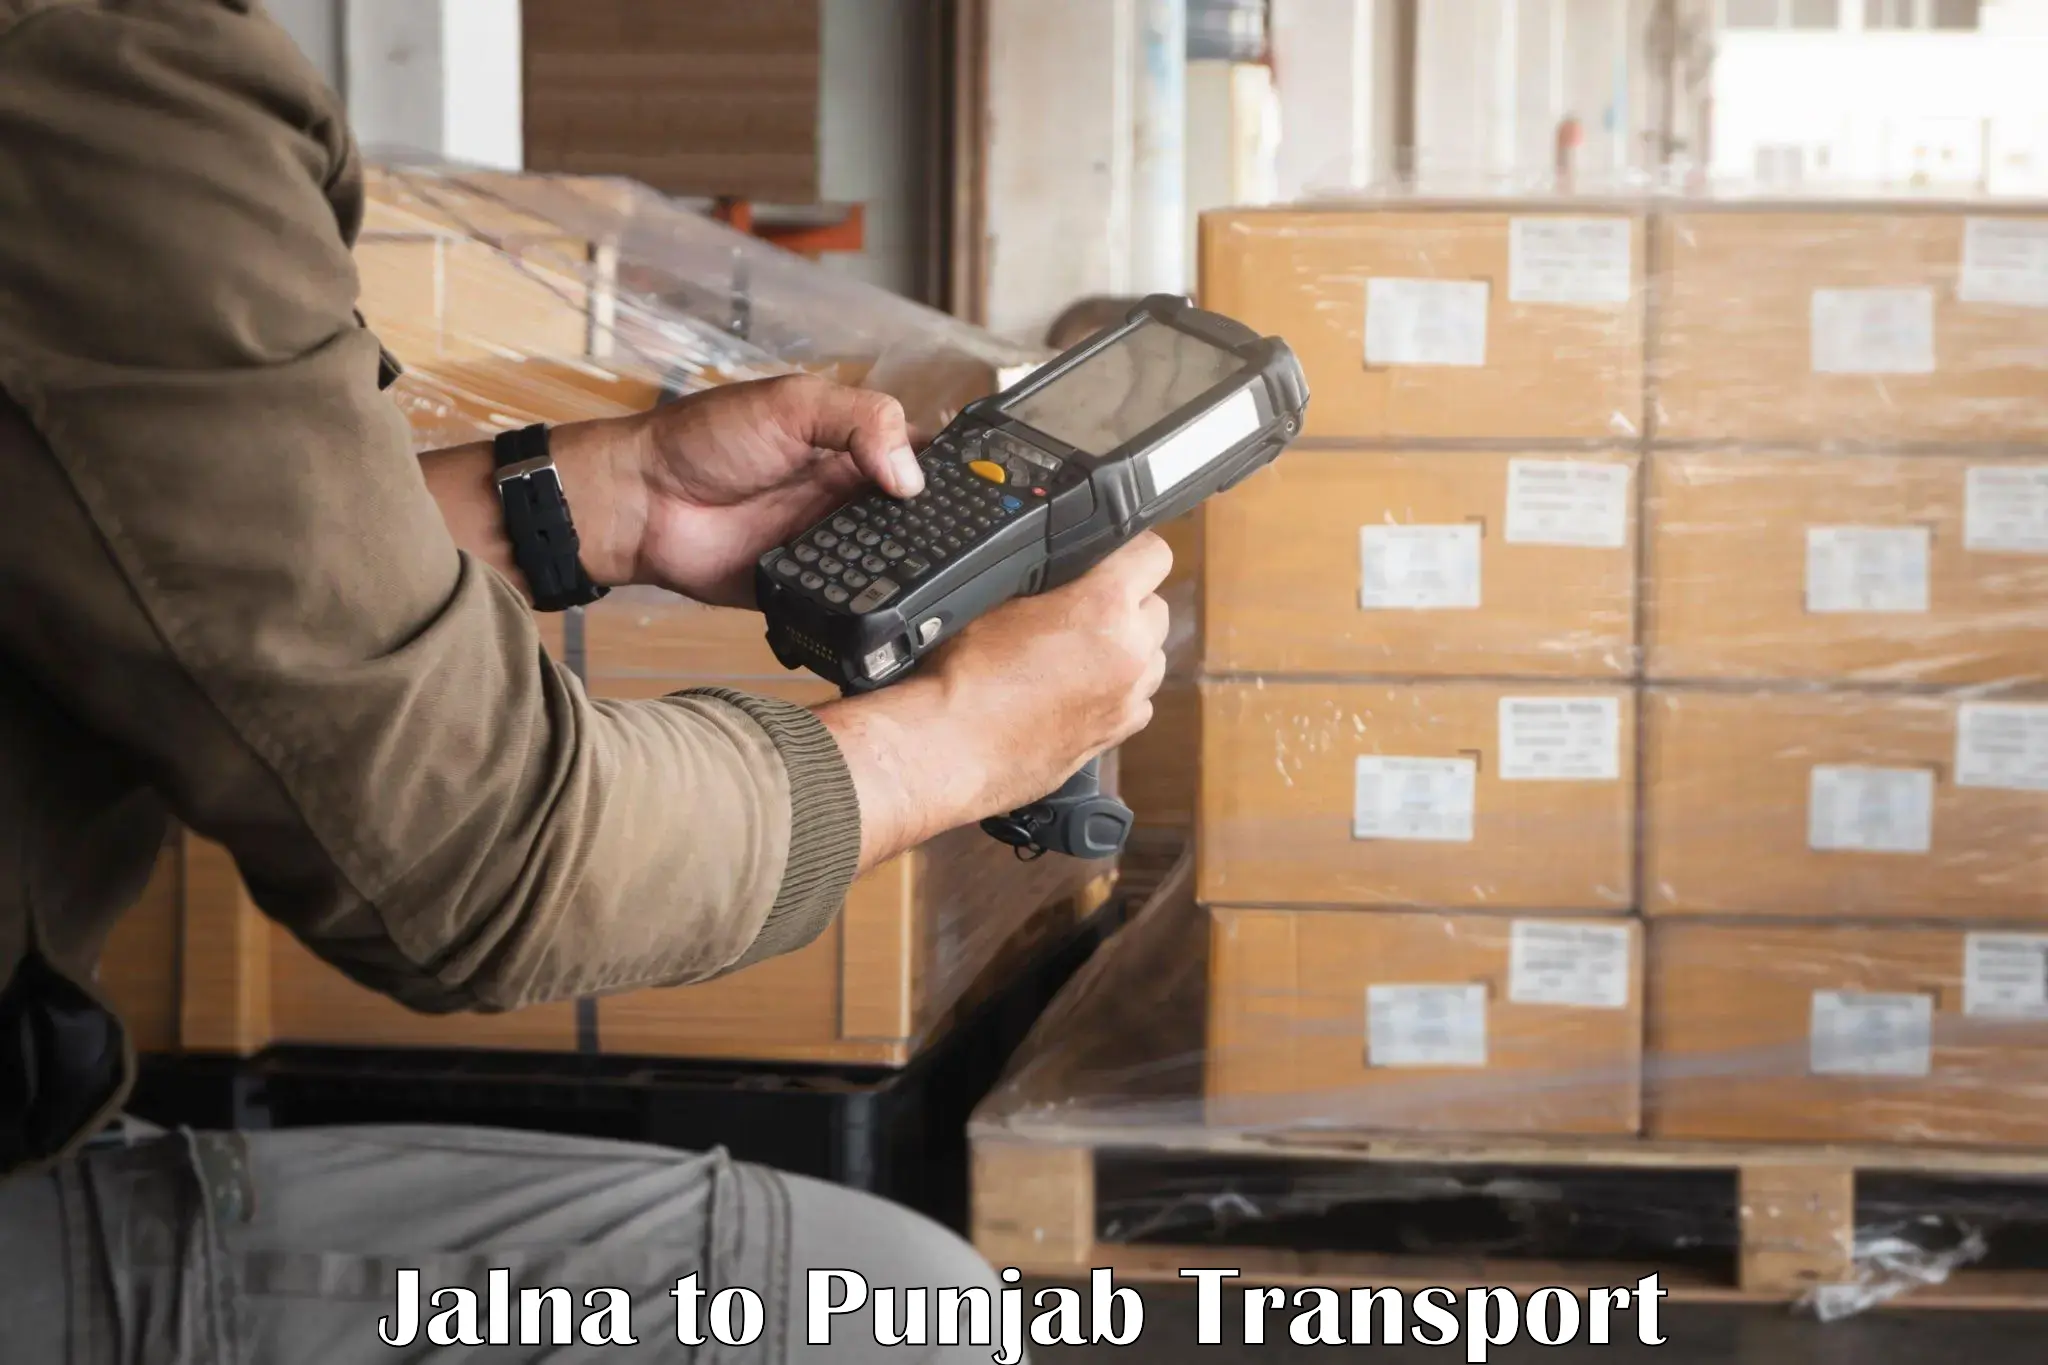 Daily parcel service transport Jalna to Patiala